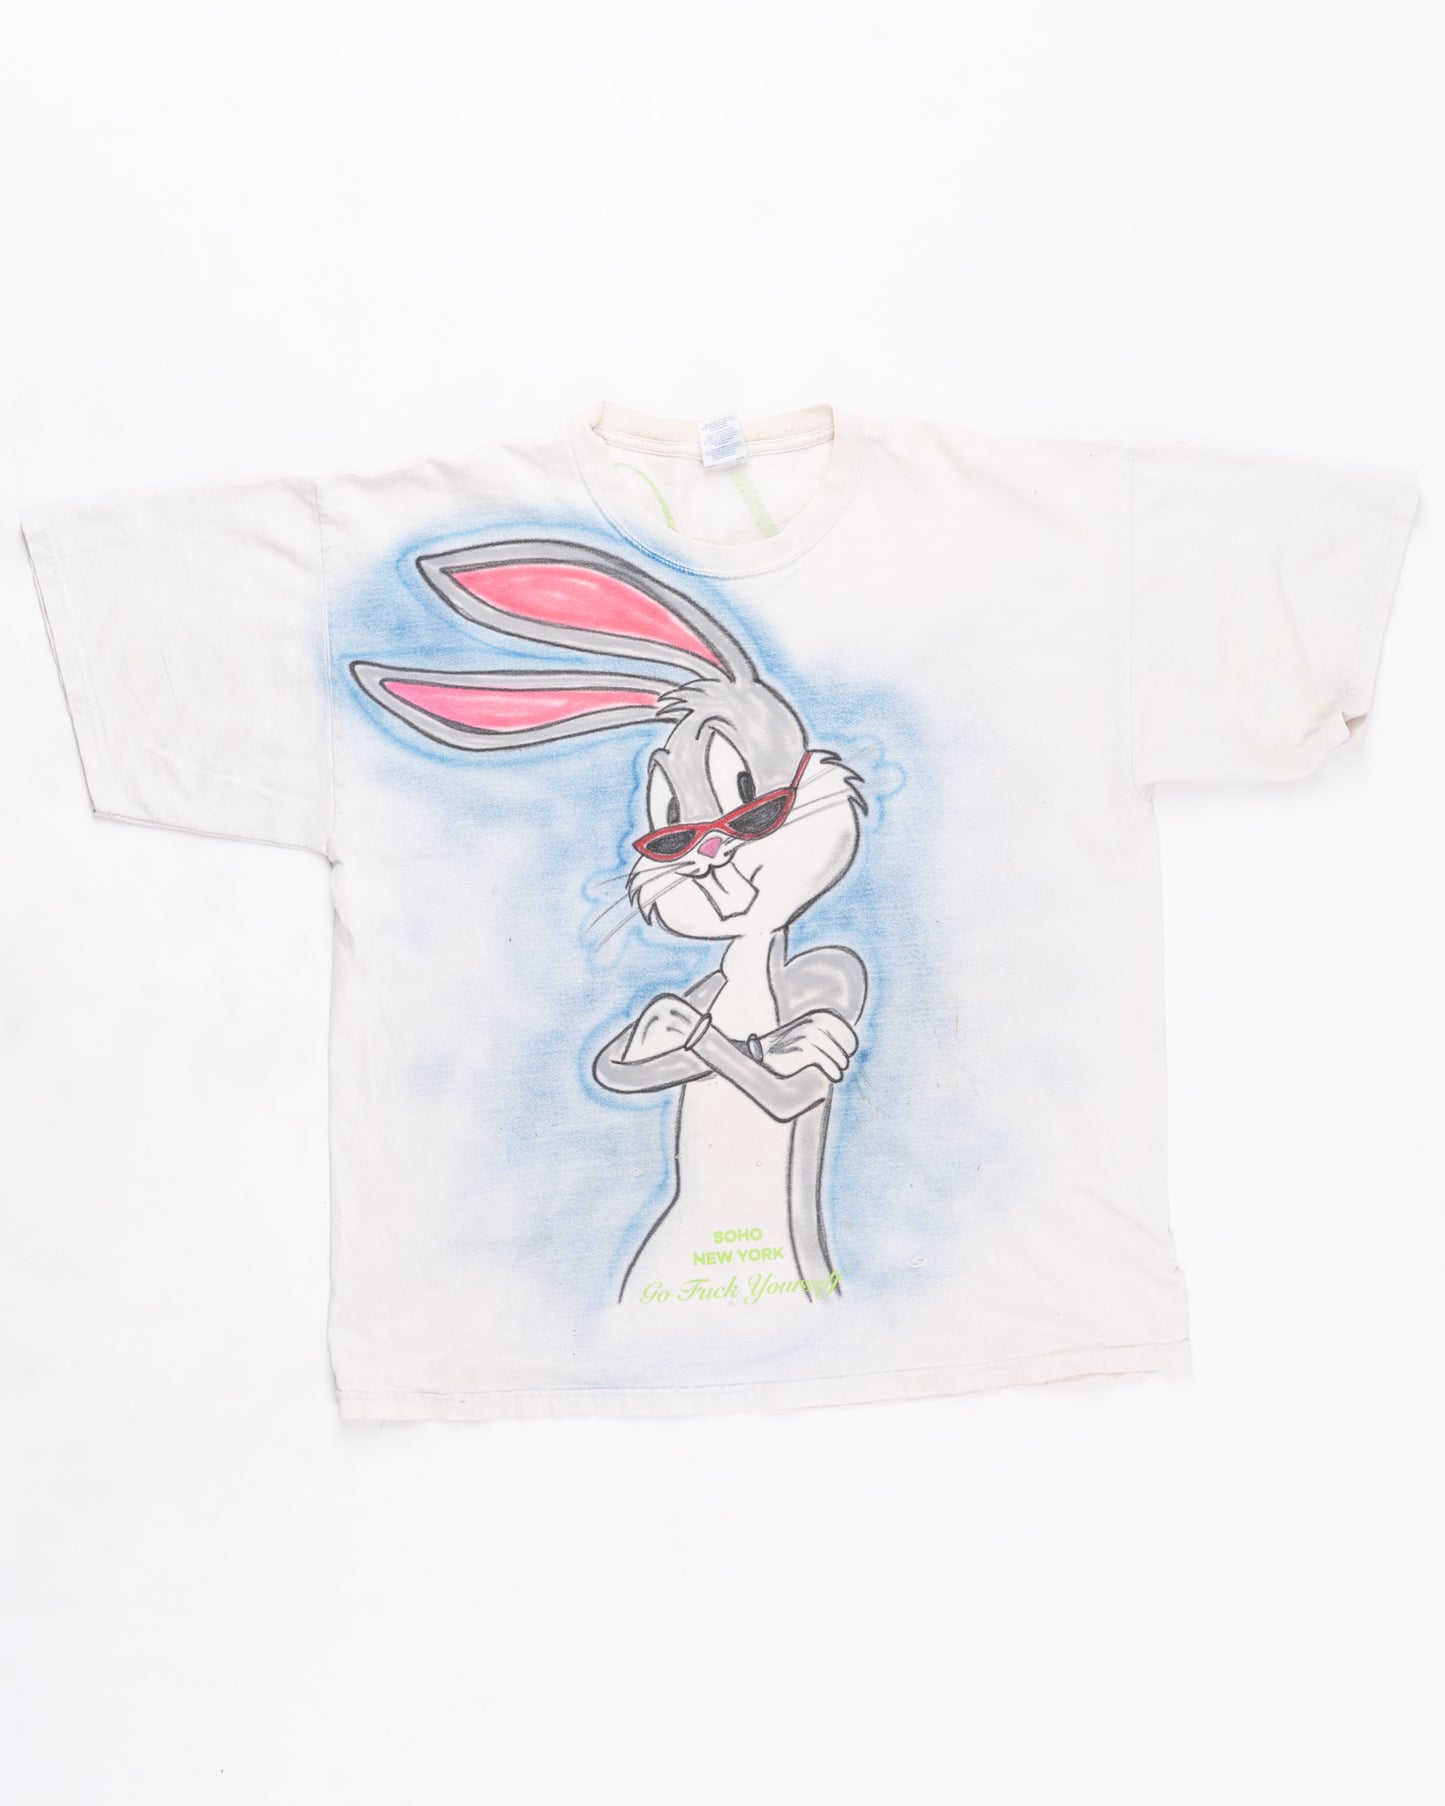 Bugs Bunny T-Shirt Size: XLarge